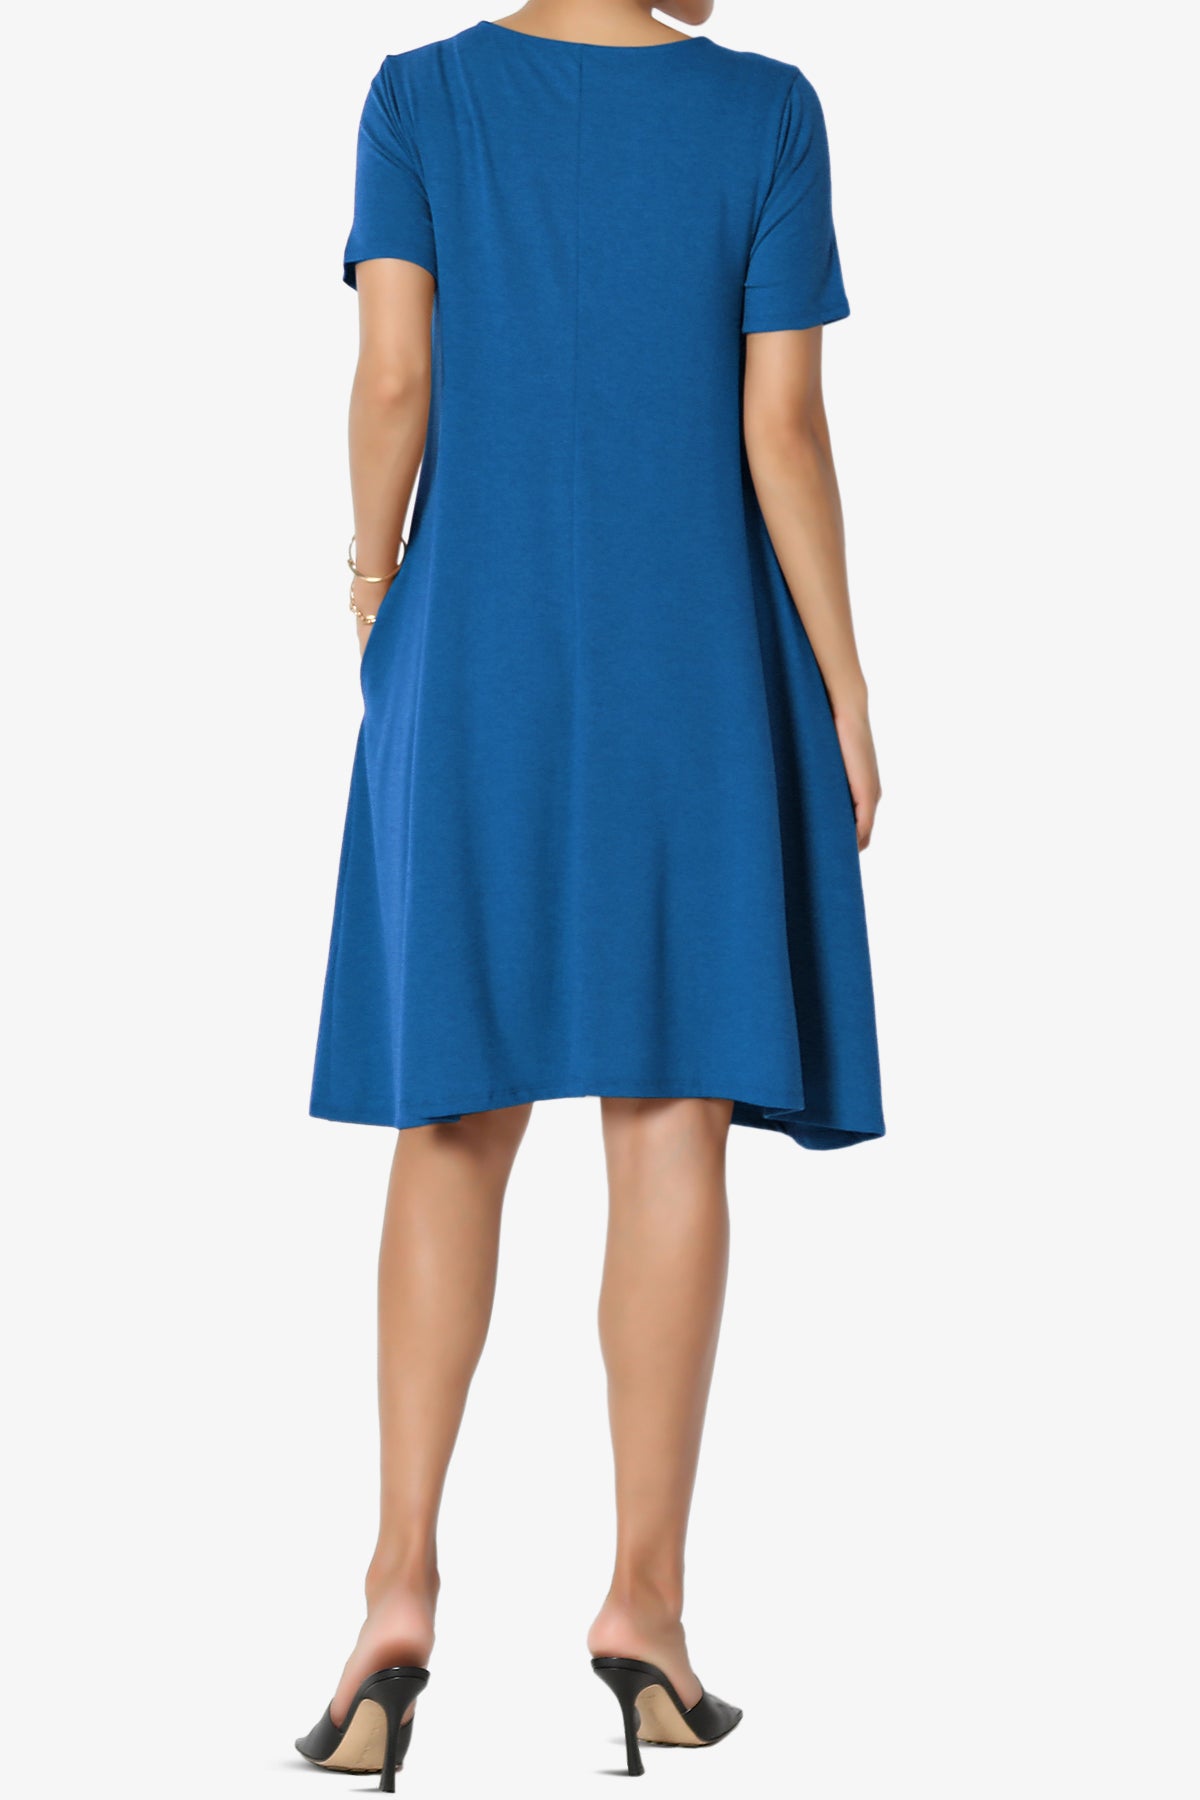 Allie Short Sleeve Jersey A-Line Dress CLASSIC BLUE_2